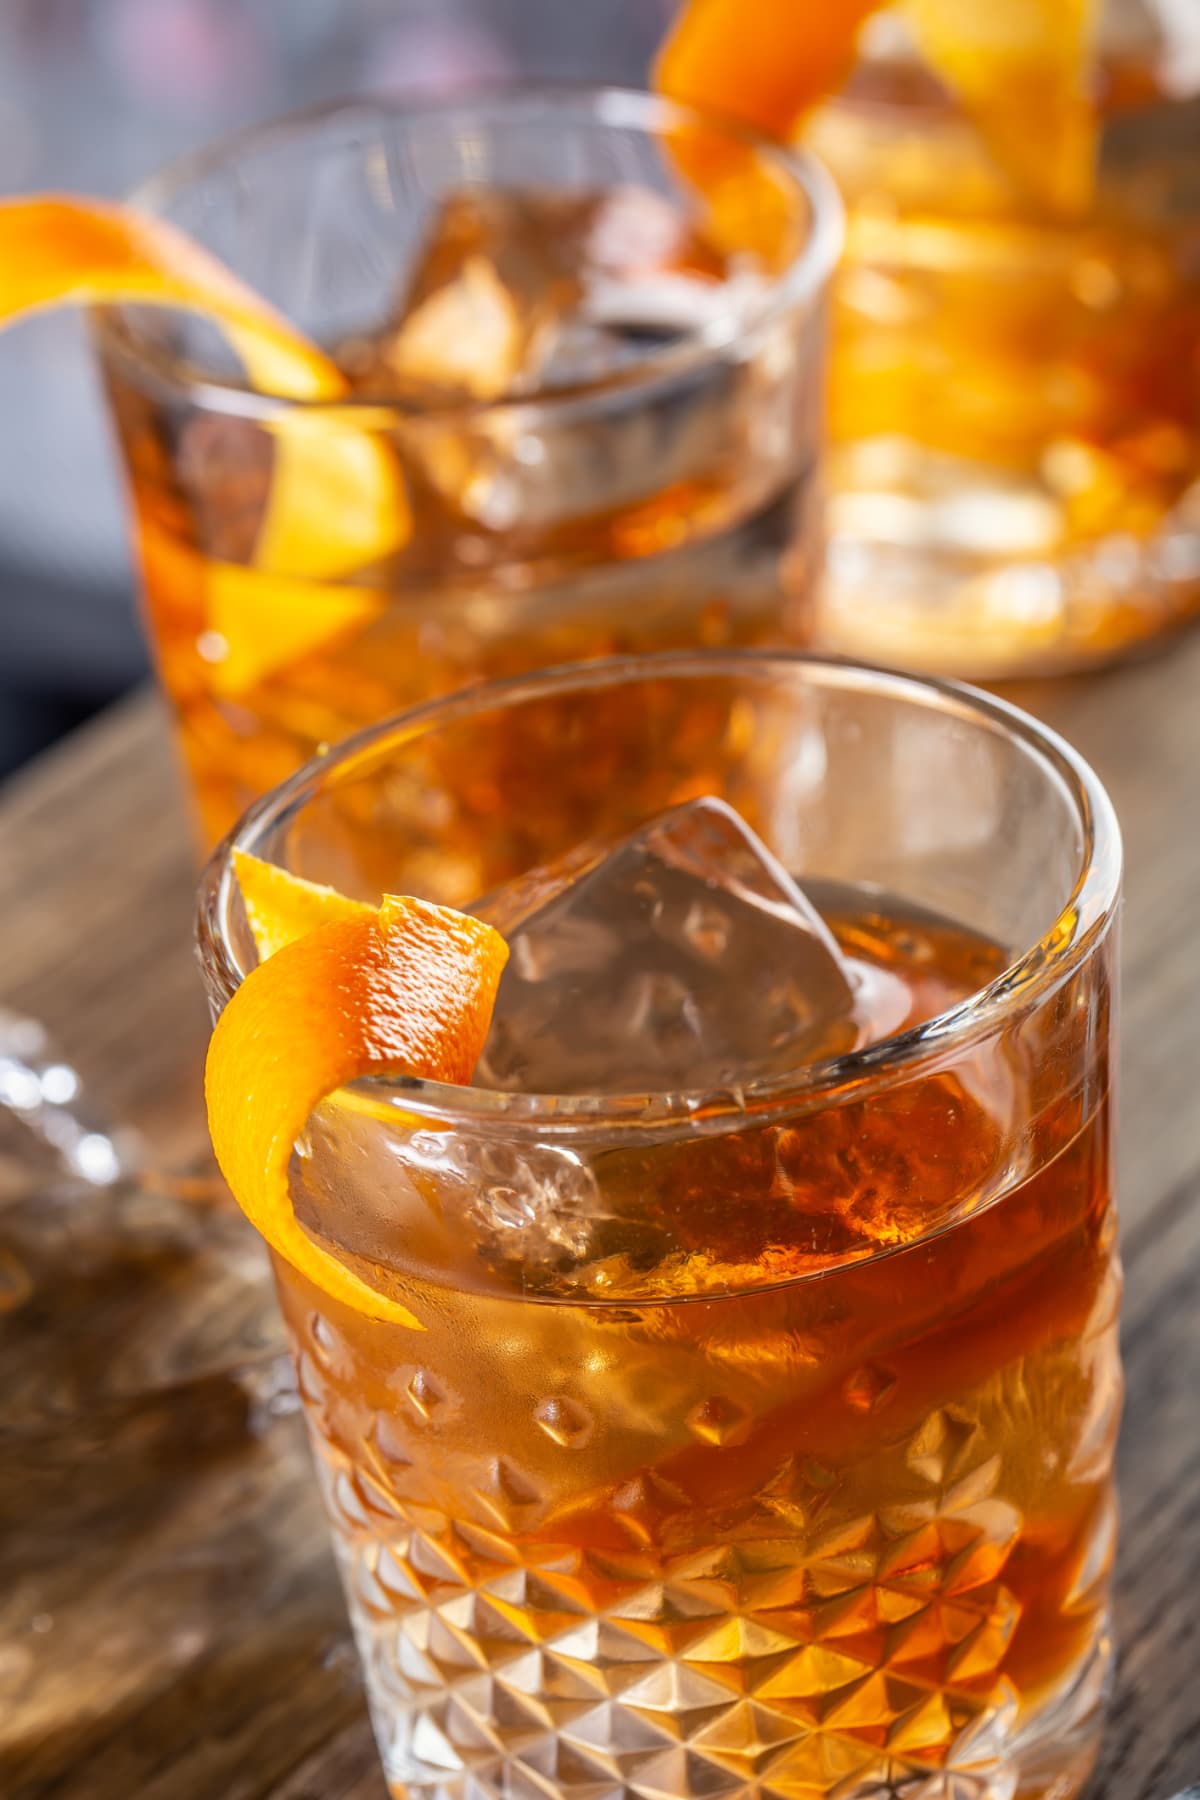 Old fashioned rum drink on ice with orange zest garnish.